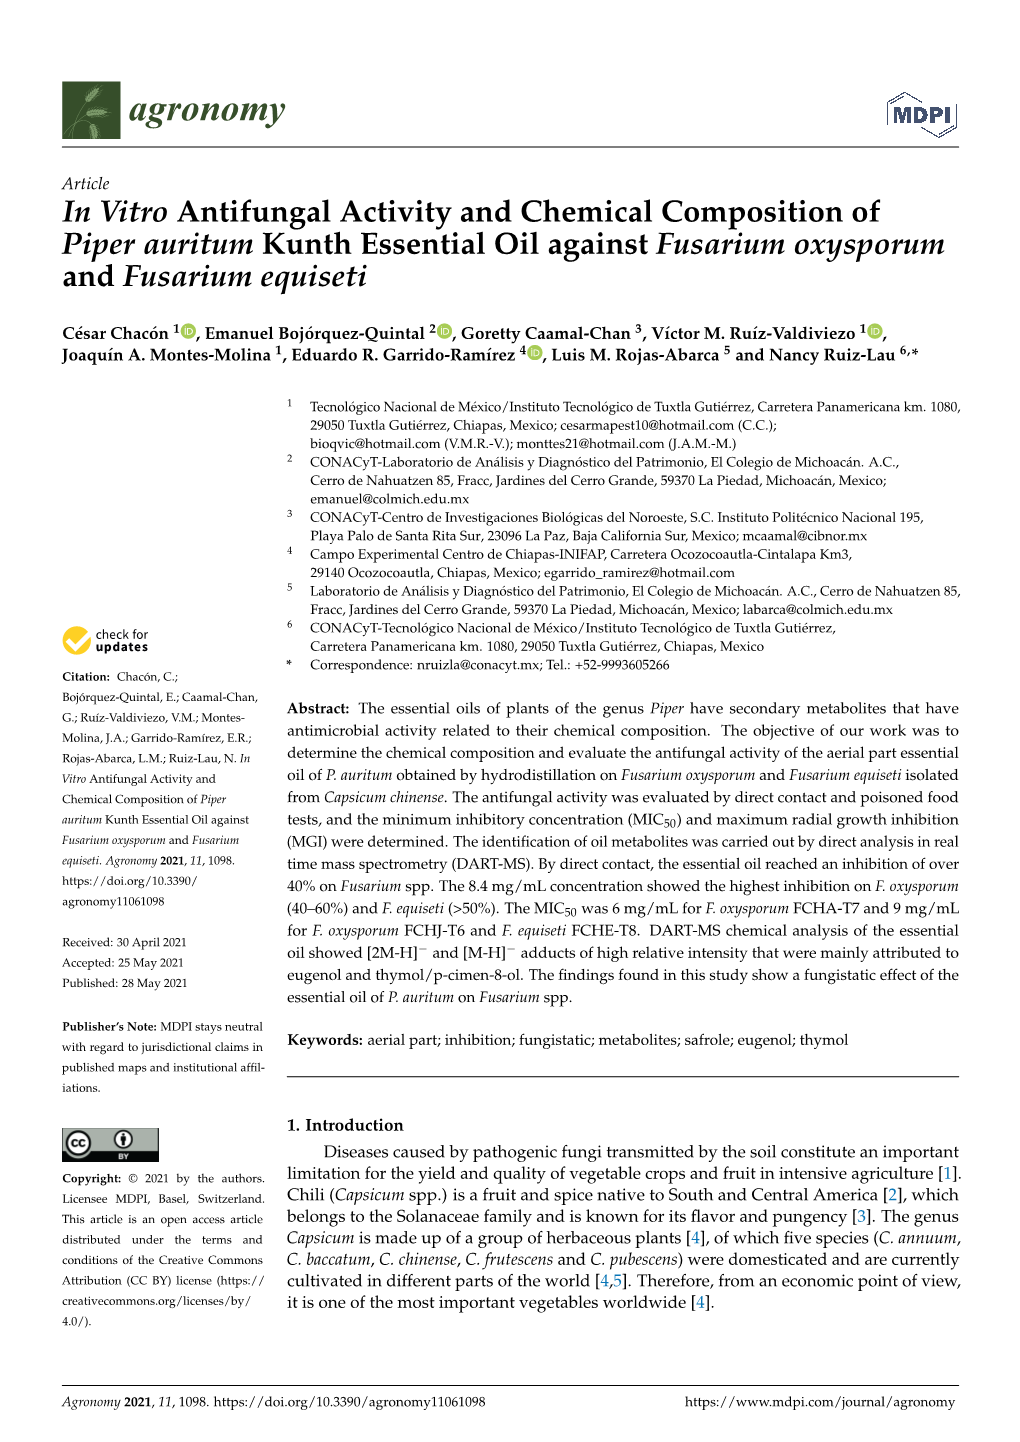 In Vitro Antifungal Activity and Chemical Composition of Piper Auritum Kunth Essential Oil Against Fusarium Oxysporum and Fusarium Equiseti